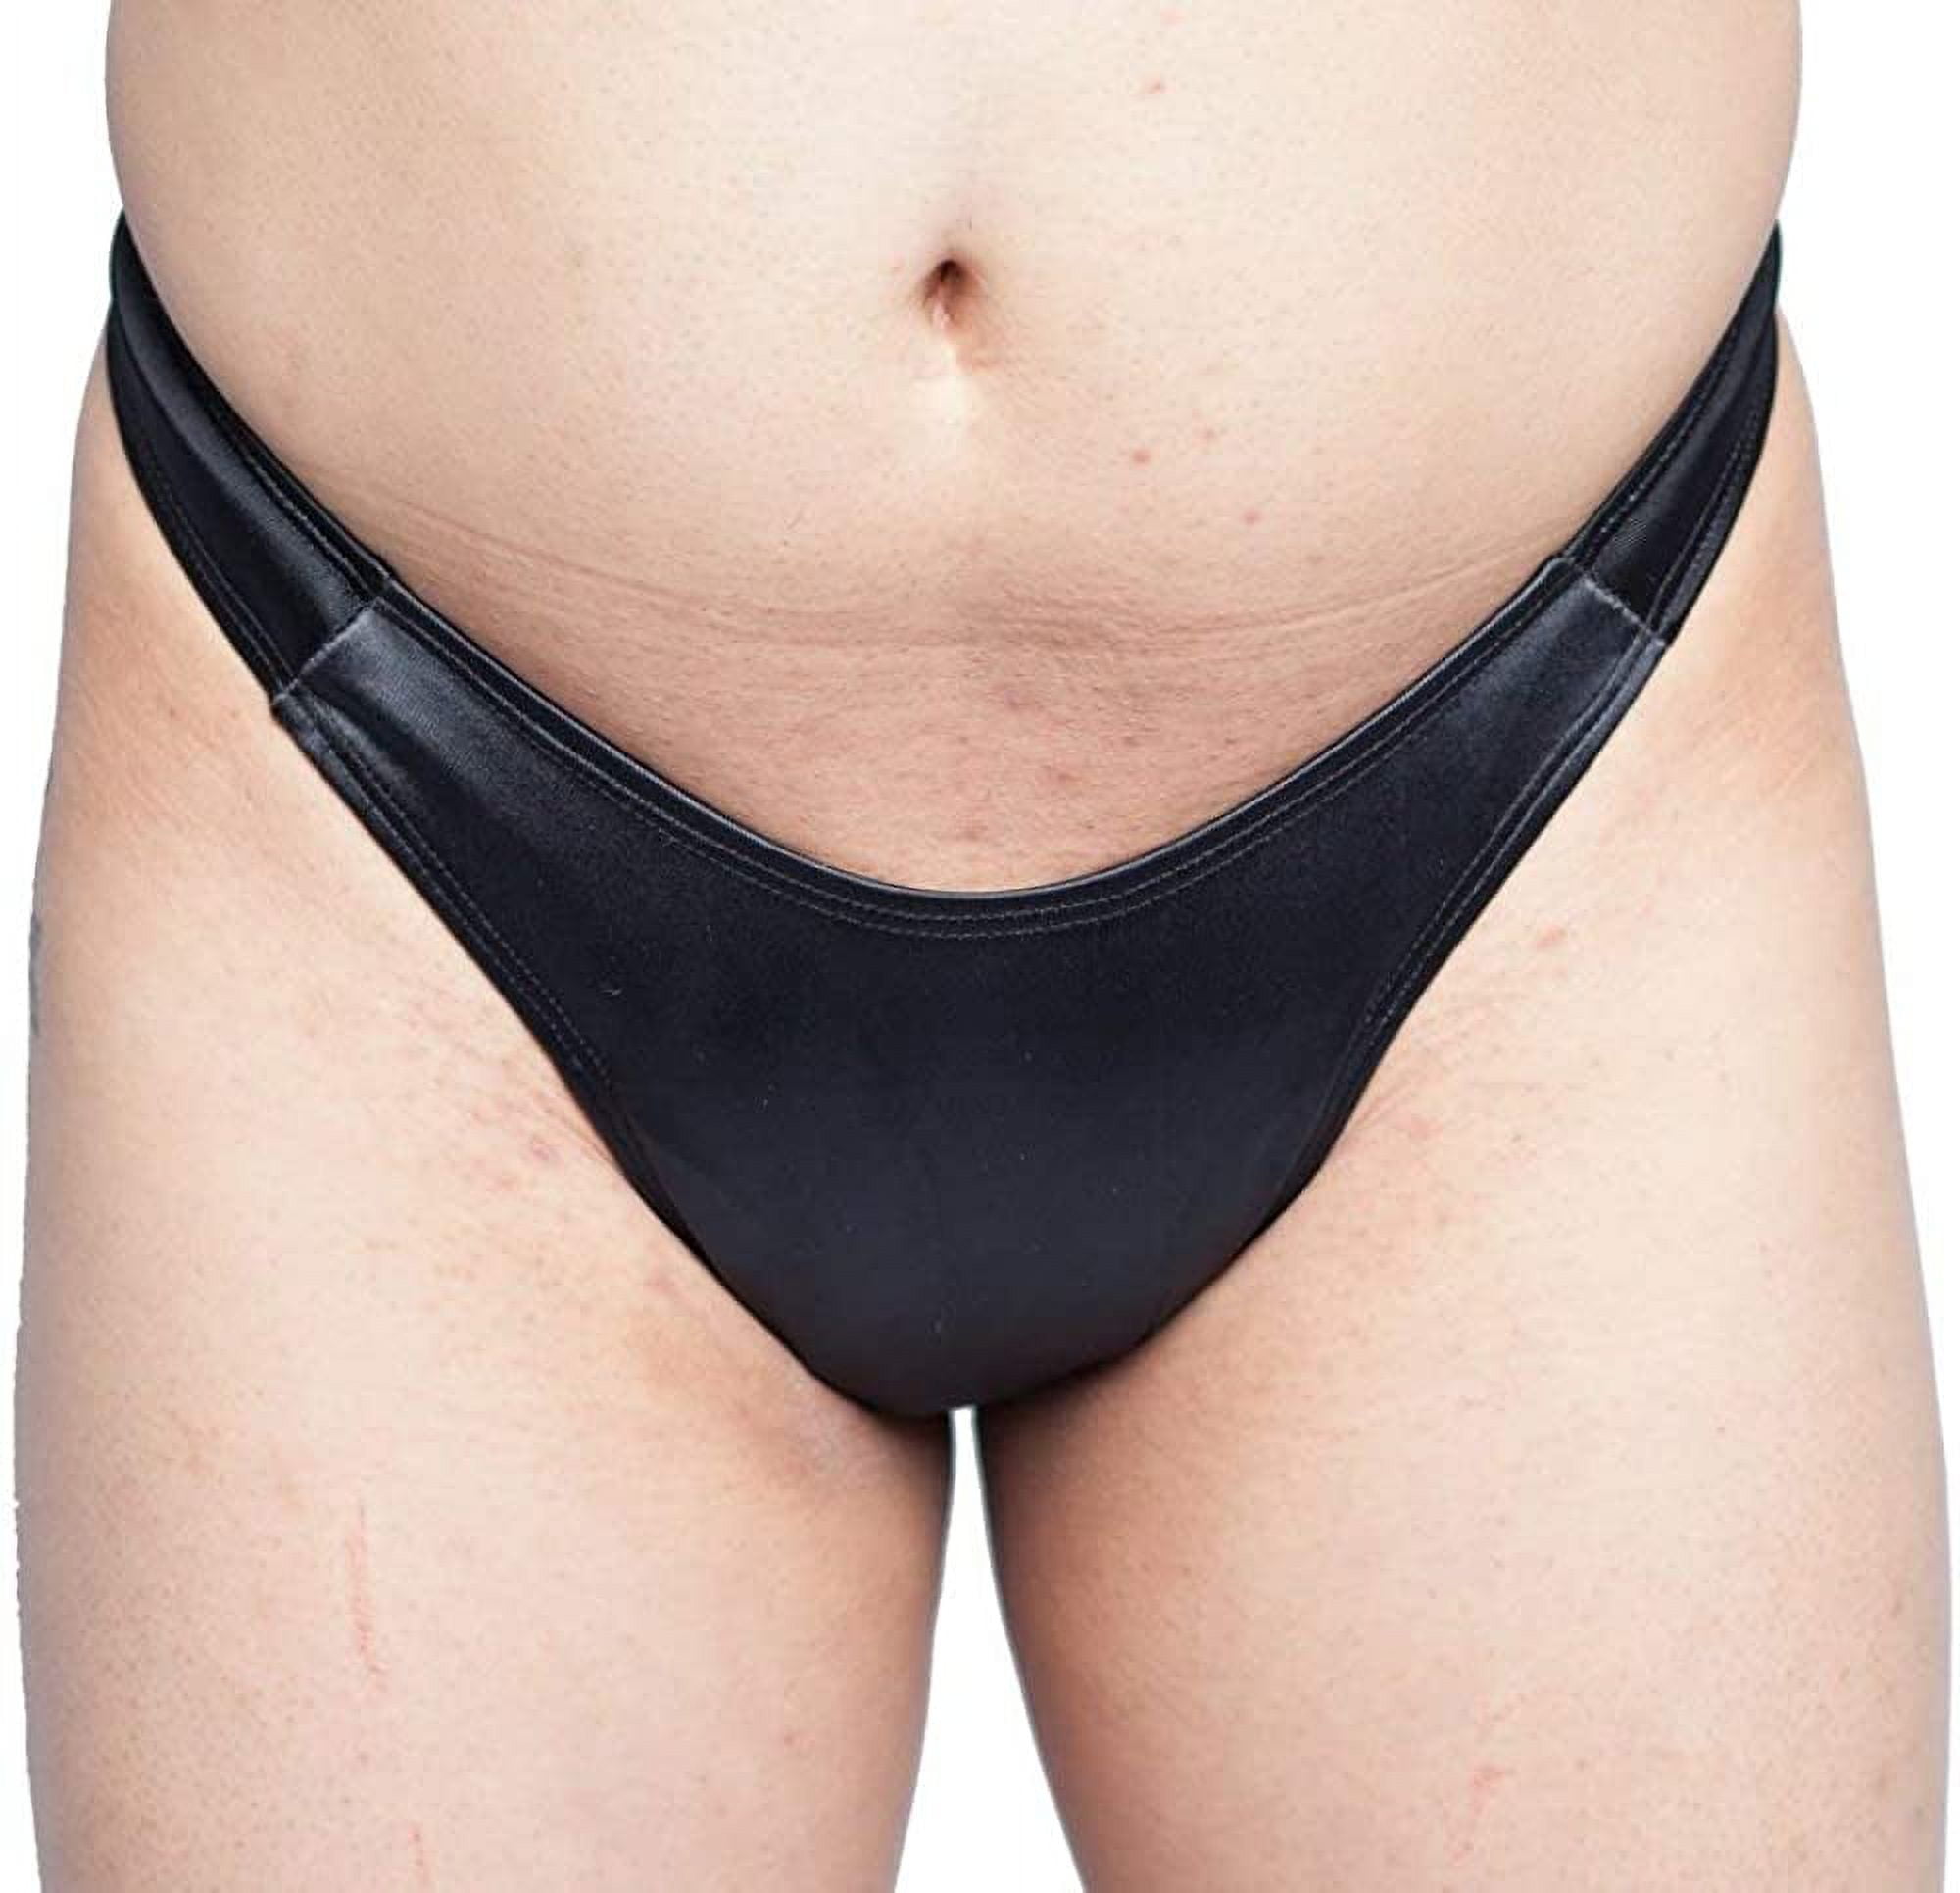 Tucking Gaff Panties For Crossdressing Men and Trans-Women, Thong